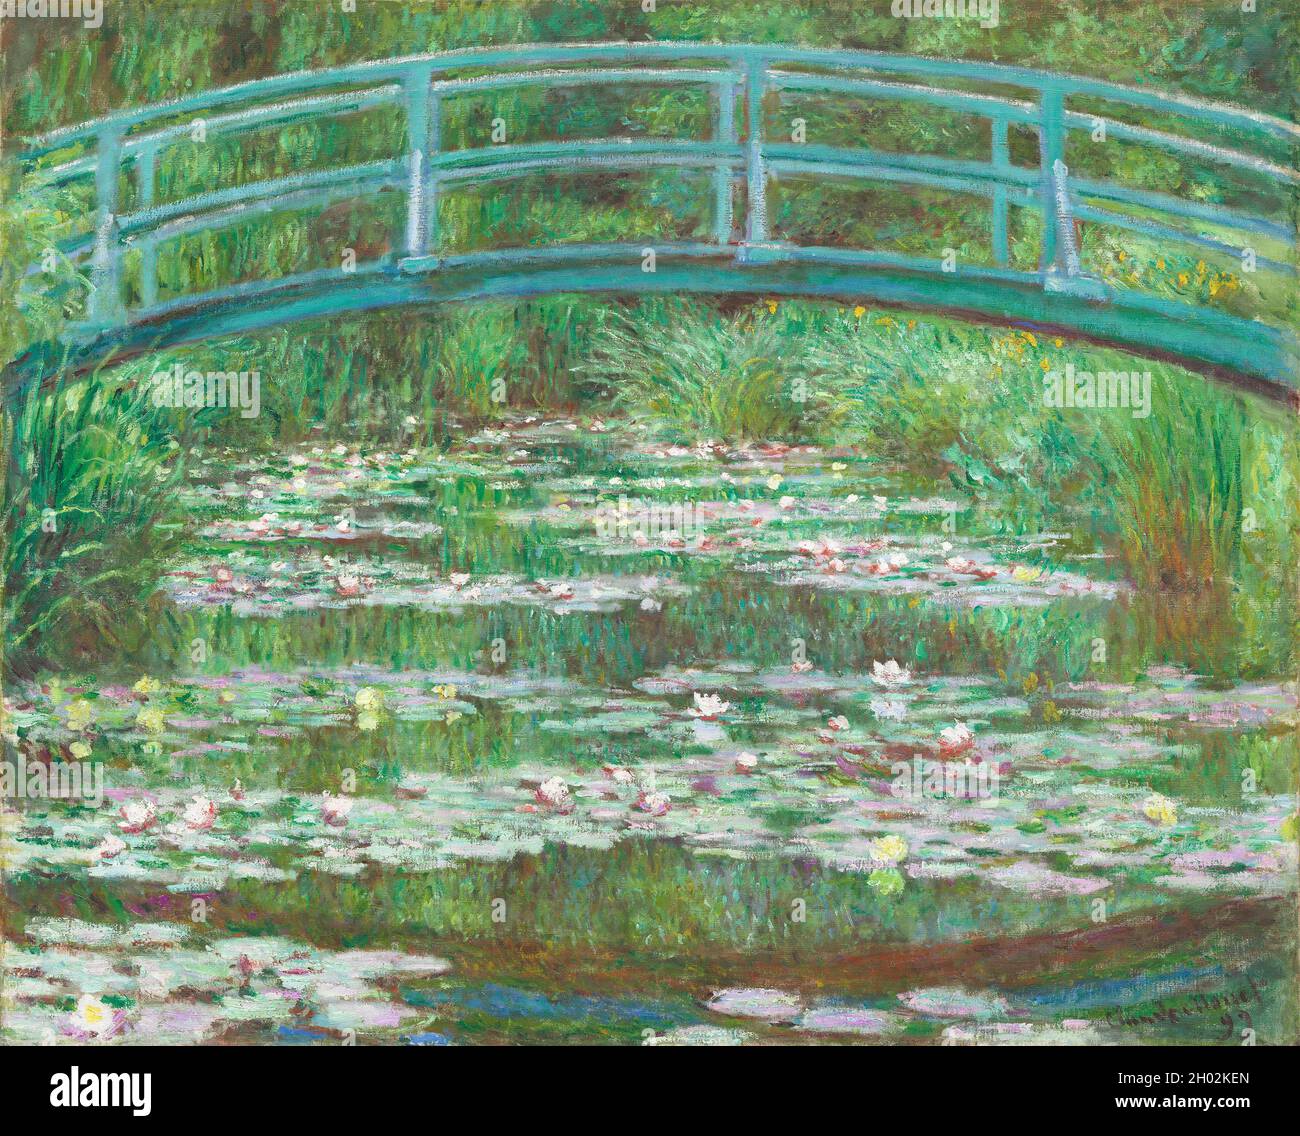 La passerella giapponese (1899) di Claude Monet. Foto Stock